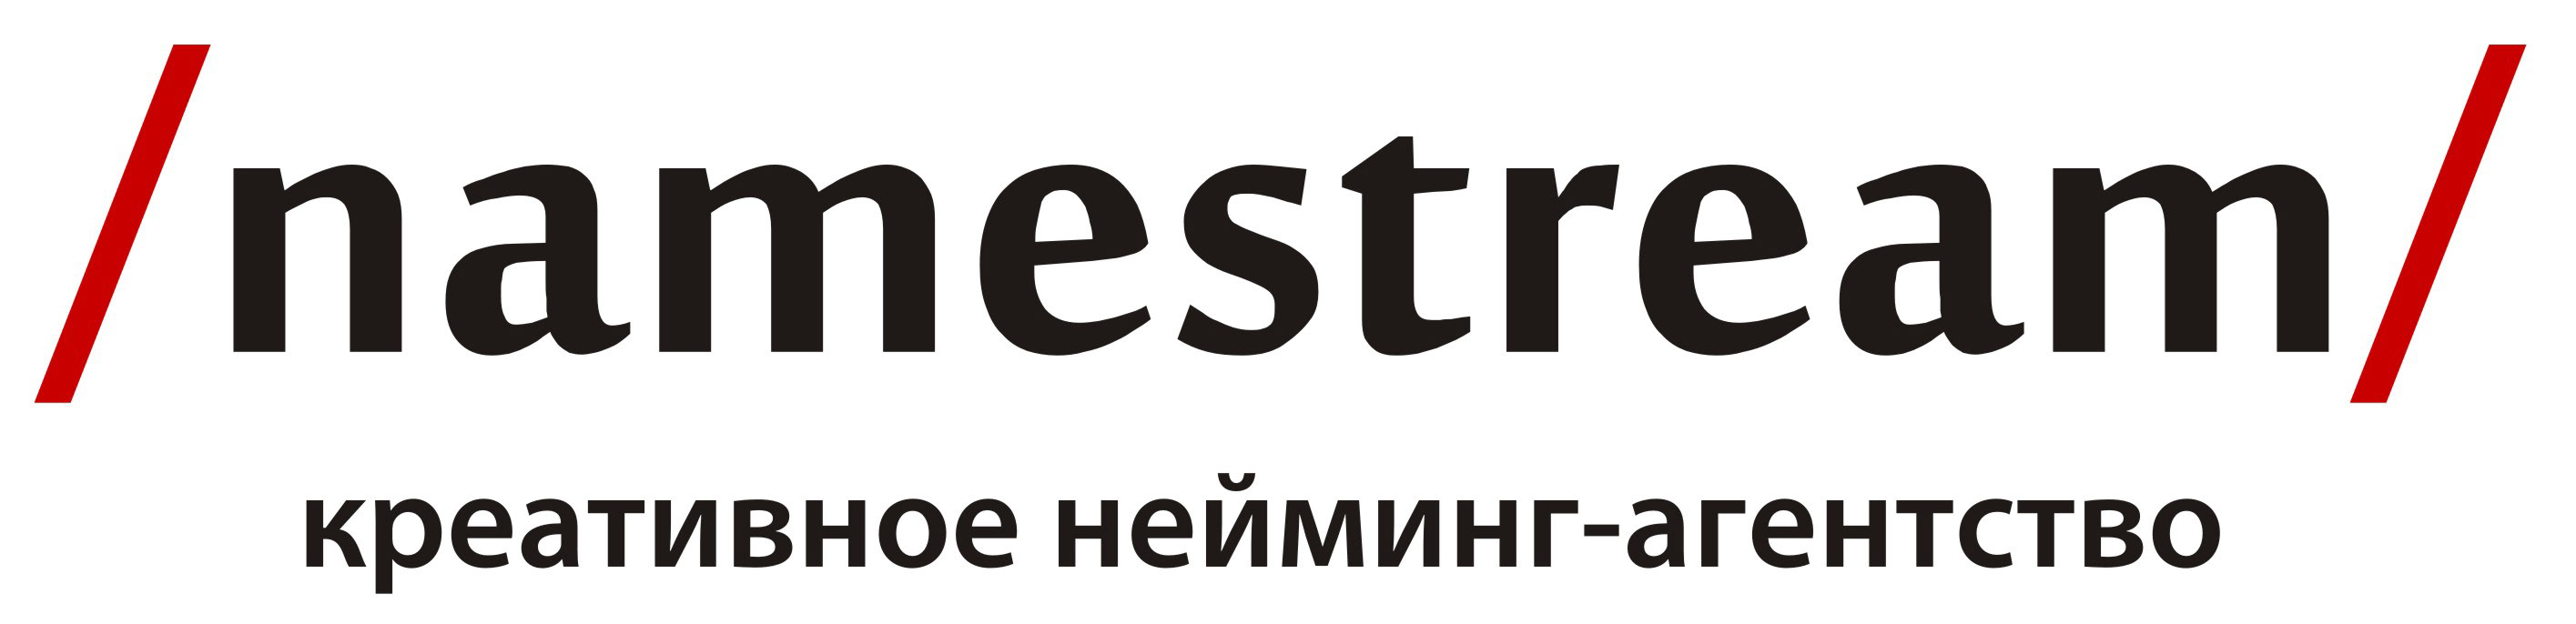 Логотип Namestream